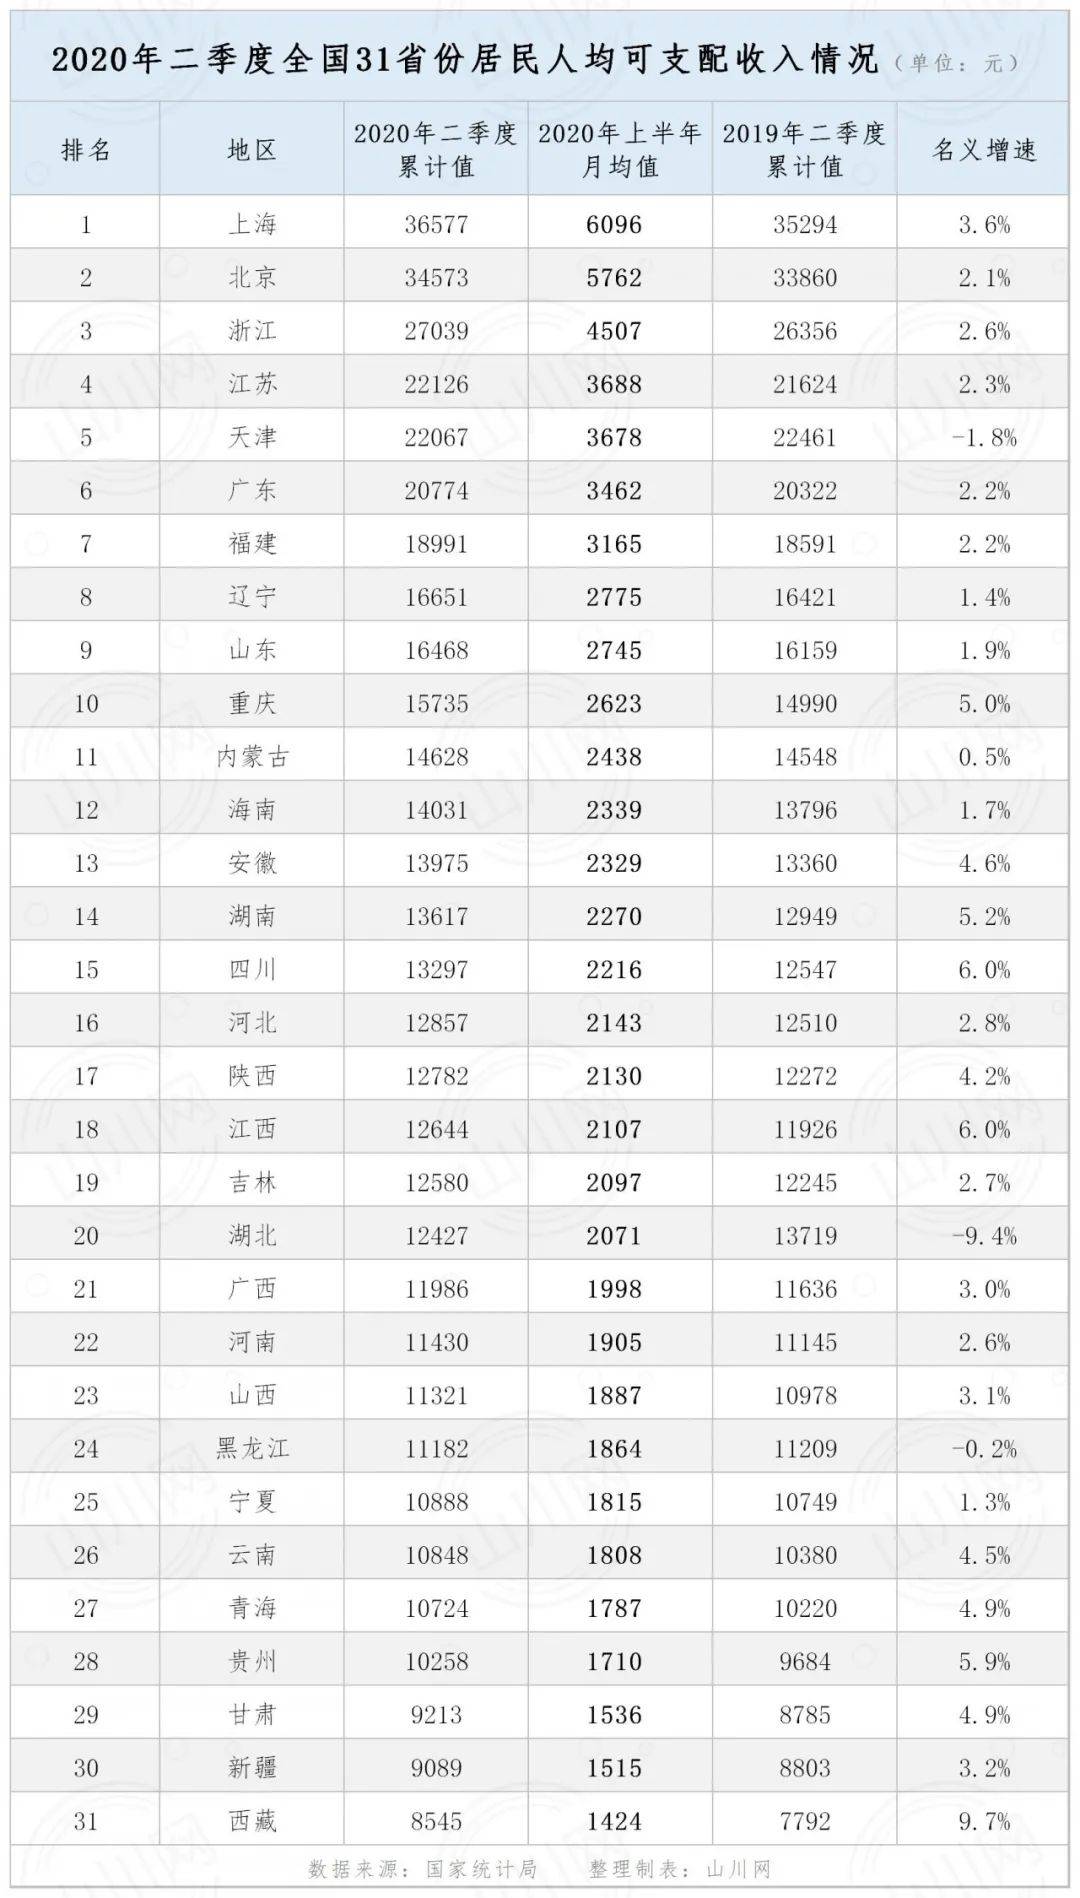 2020浙江各市人均纯_2020年上半年全国31省市人均收入数据:上海、北京、